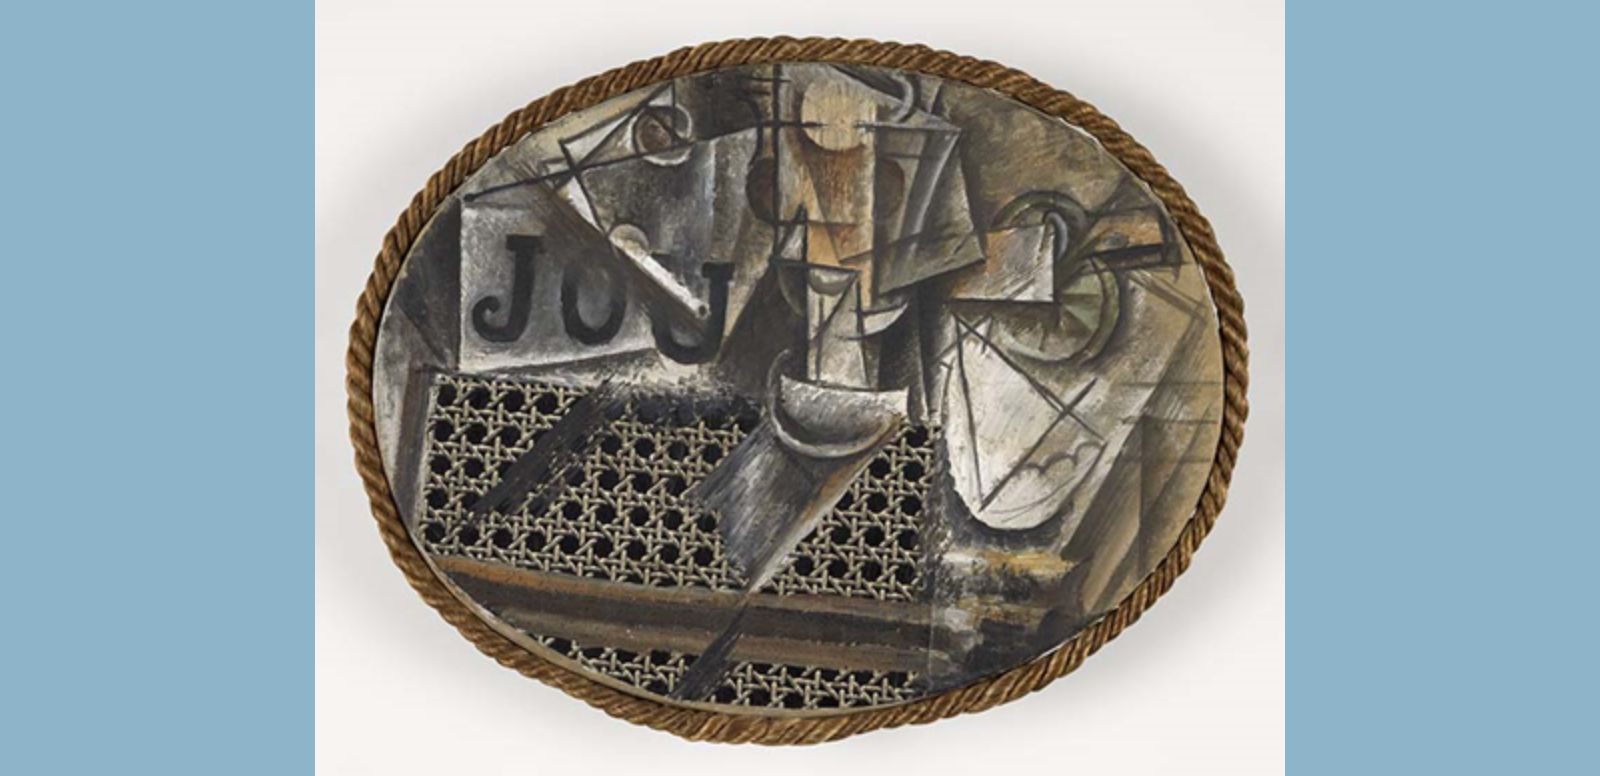 Pablo Picasso, “Naturaleza muerta con silla de rejilla”, 1912